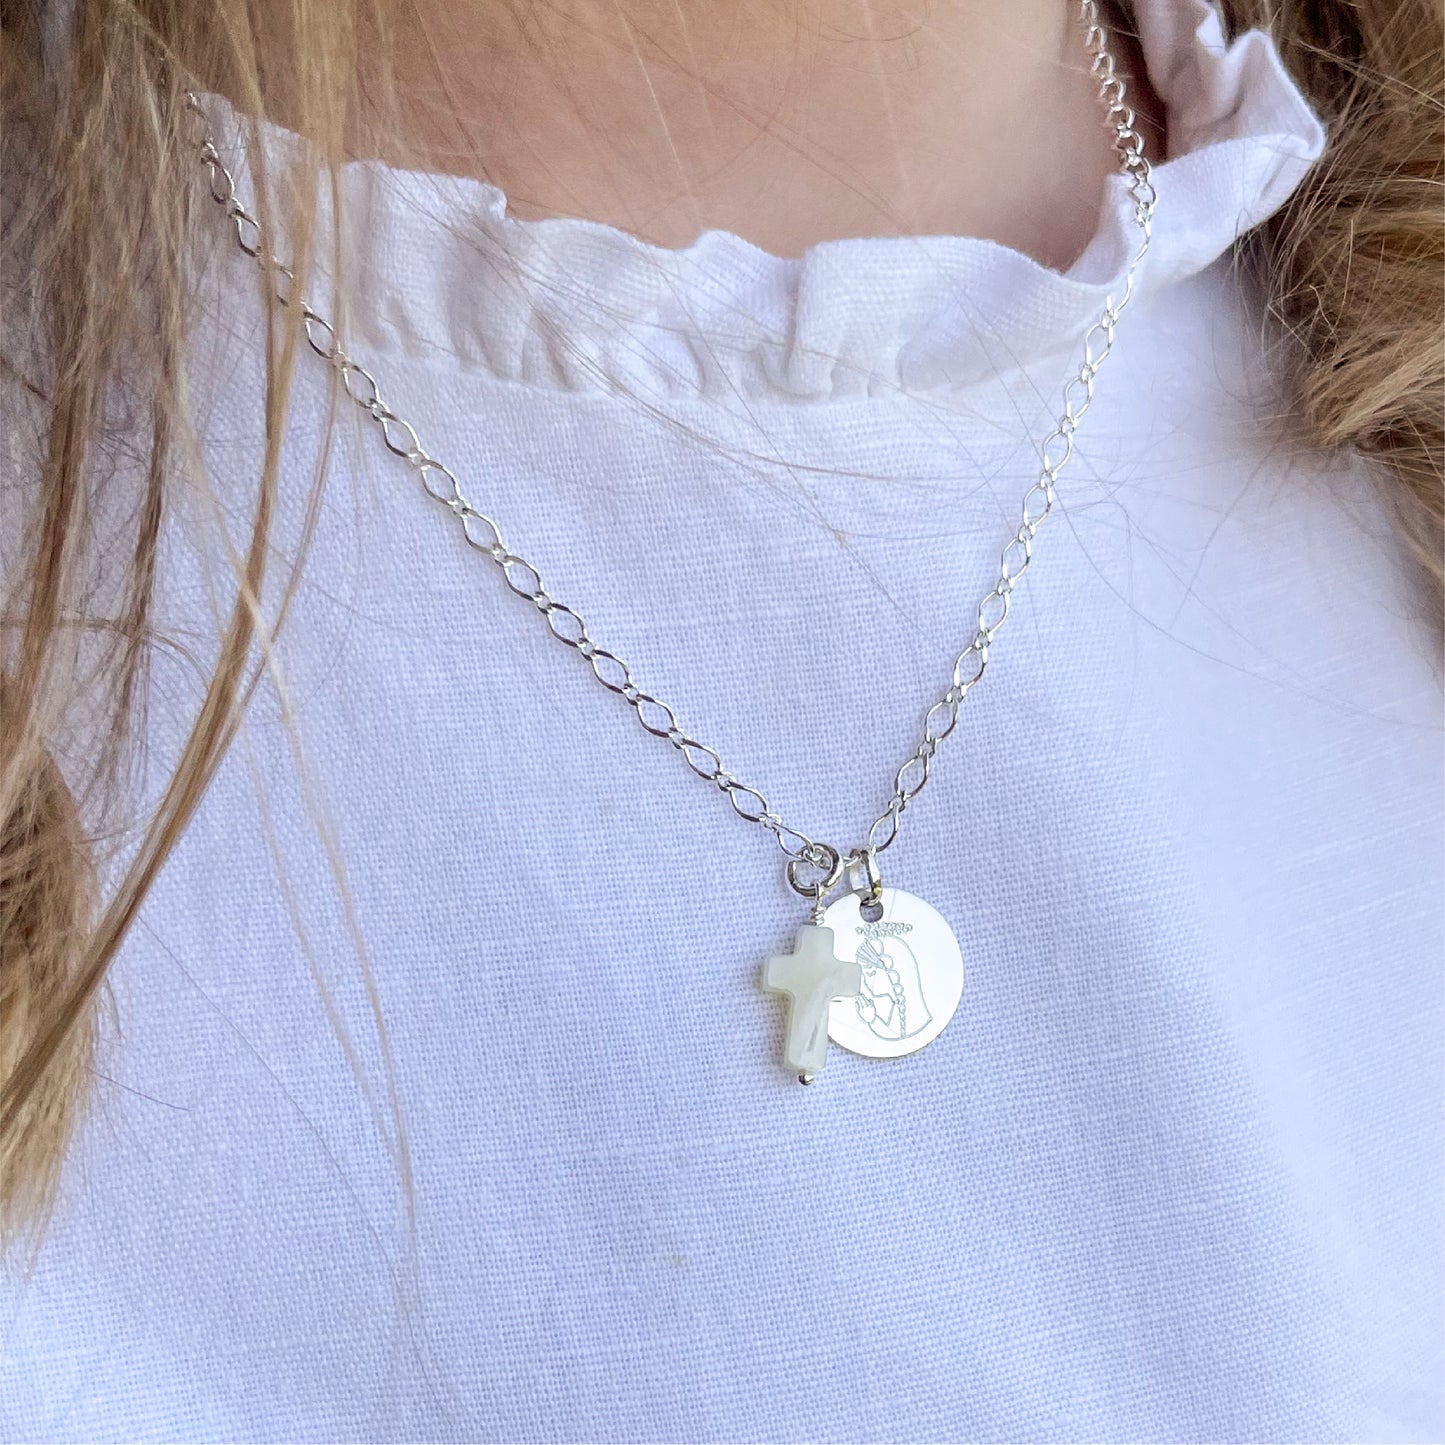 Collar Personalizado de Plata con Cadena Rombos, Medalla Virgen Niña y Cruz de Nácar